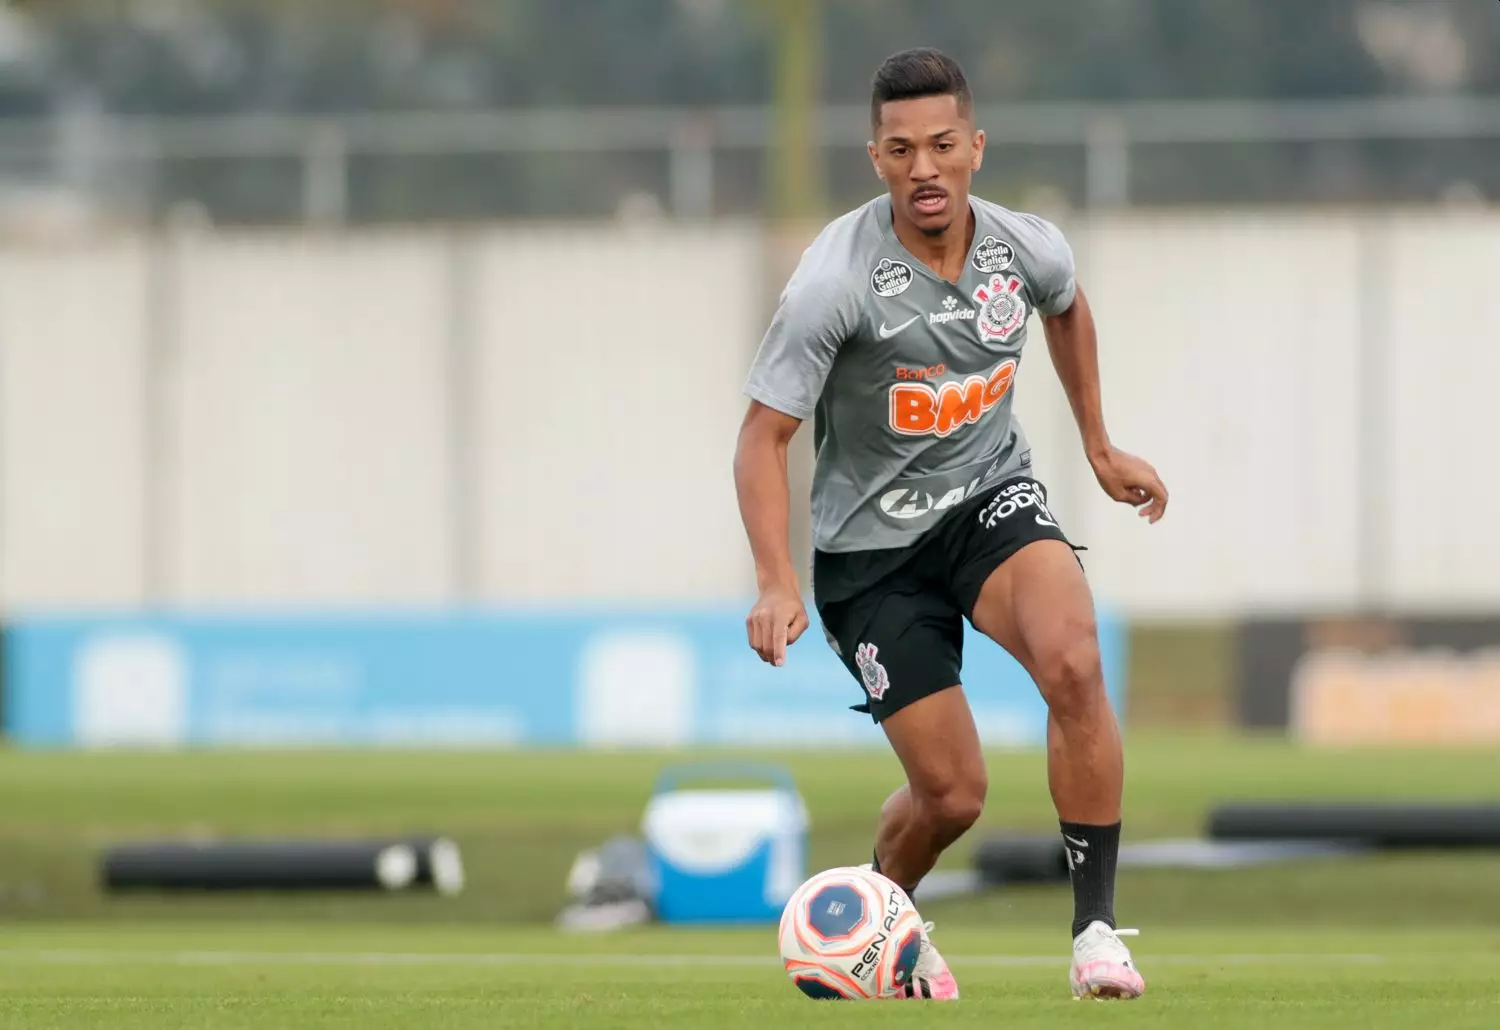 3 jovens que o Corinthians emprestou em 2021 para ganhar experiência